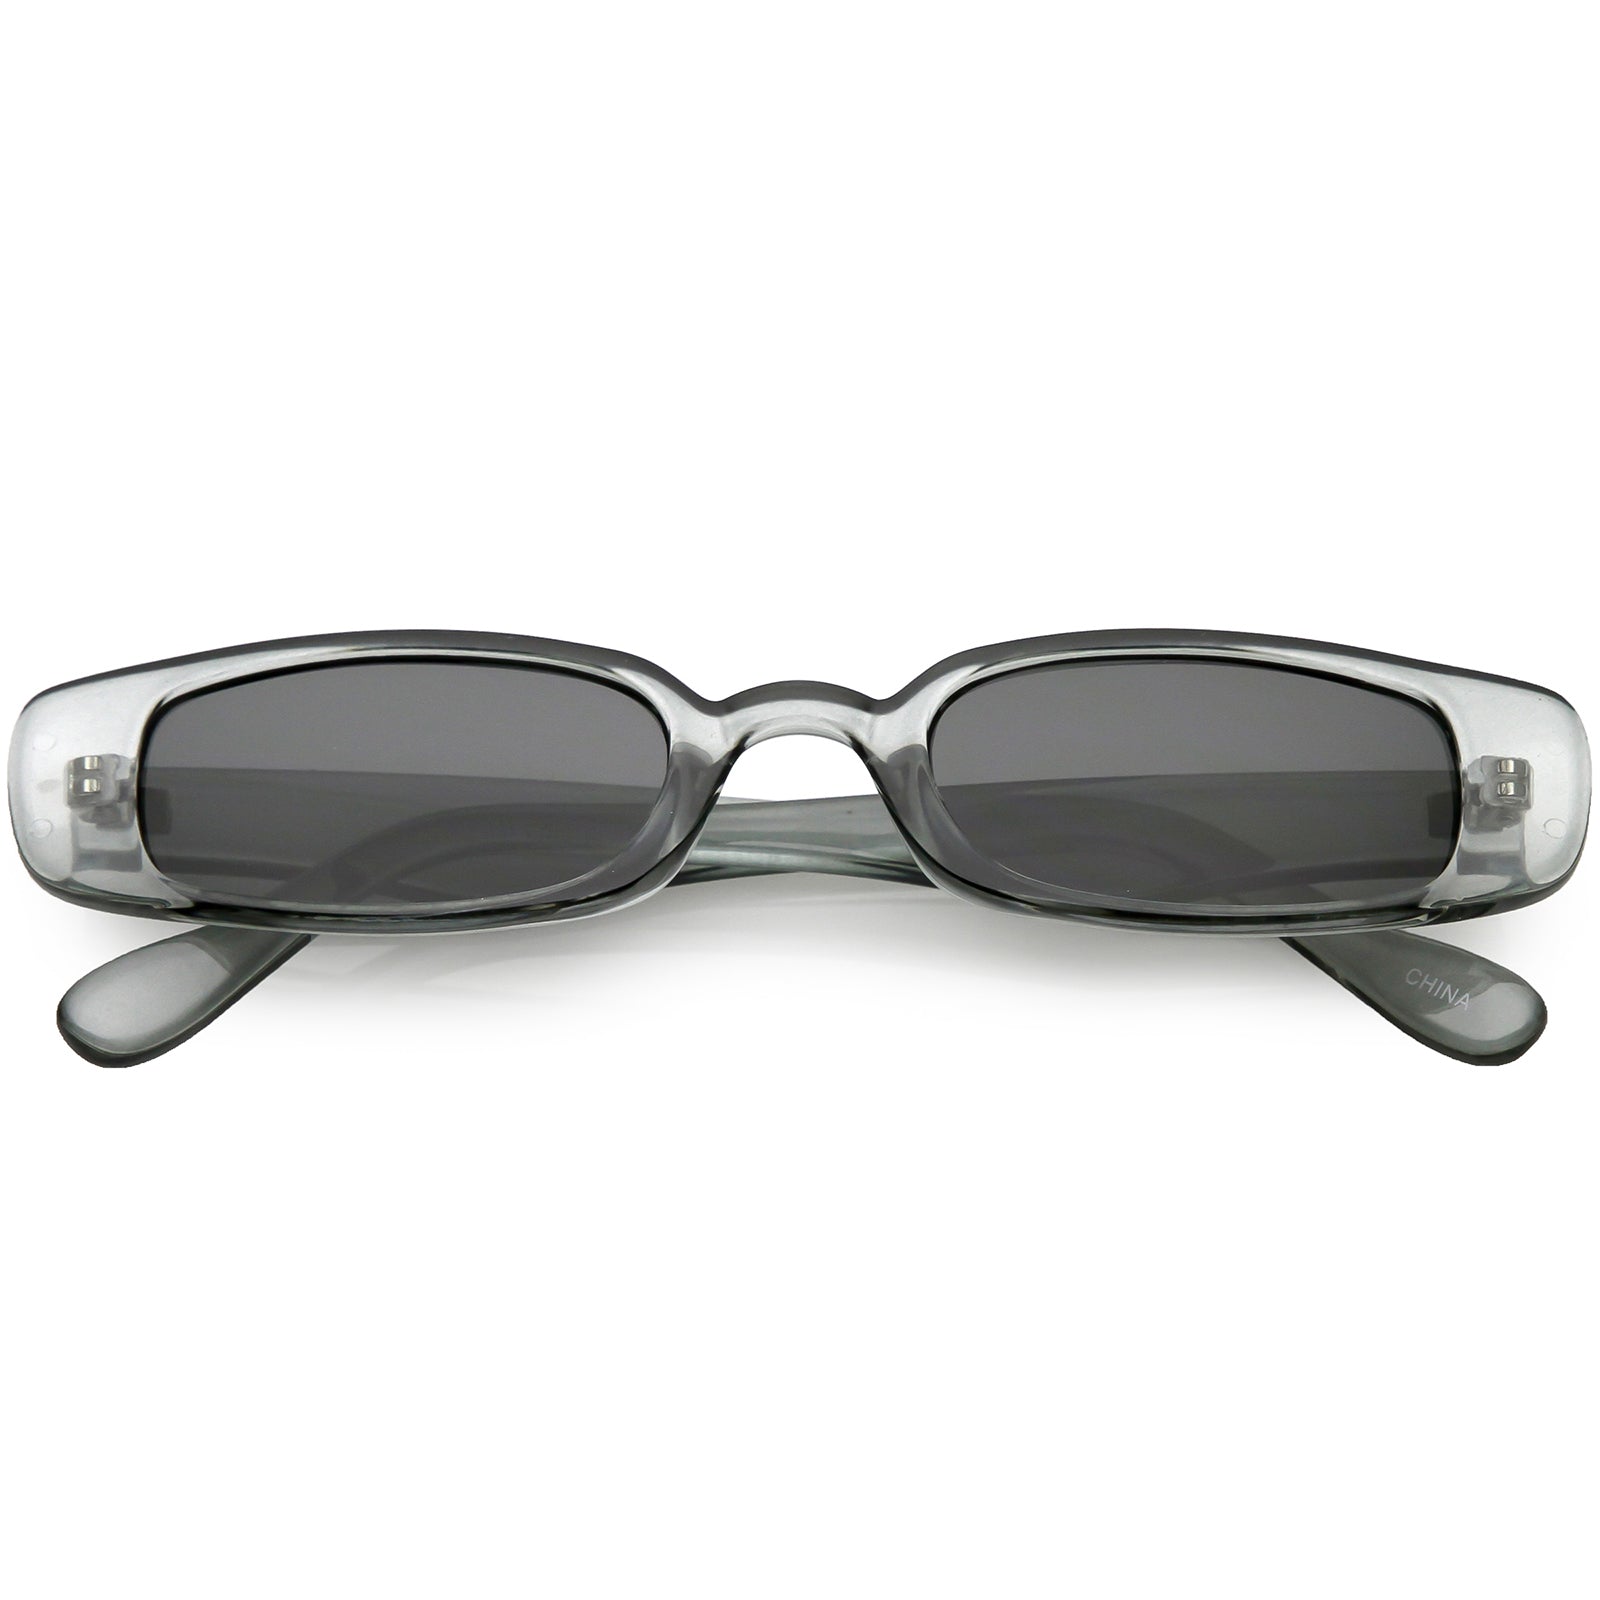 Slim rectangular sunglasses - Brown - Women - Gina Tricot